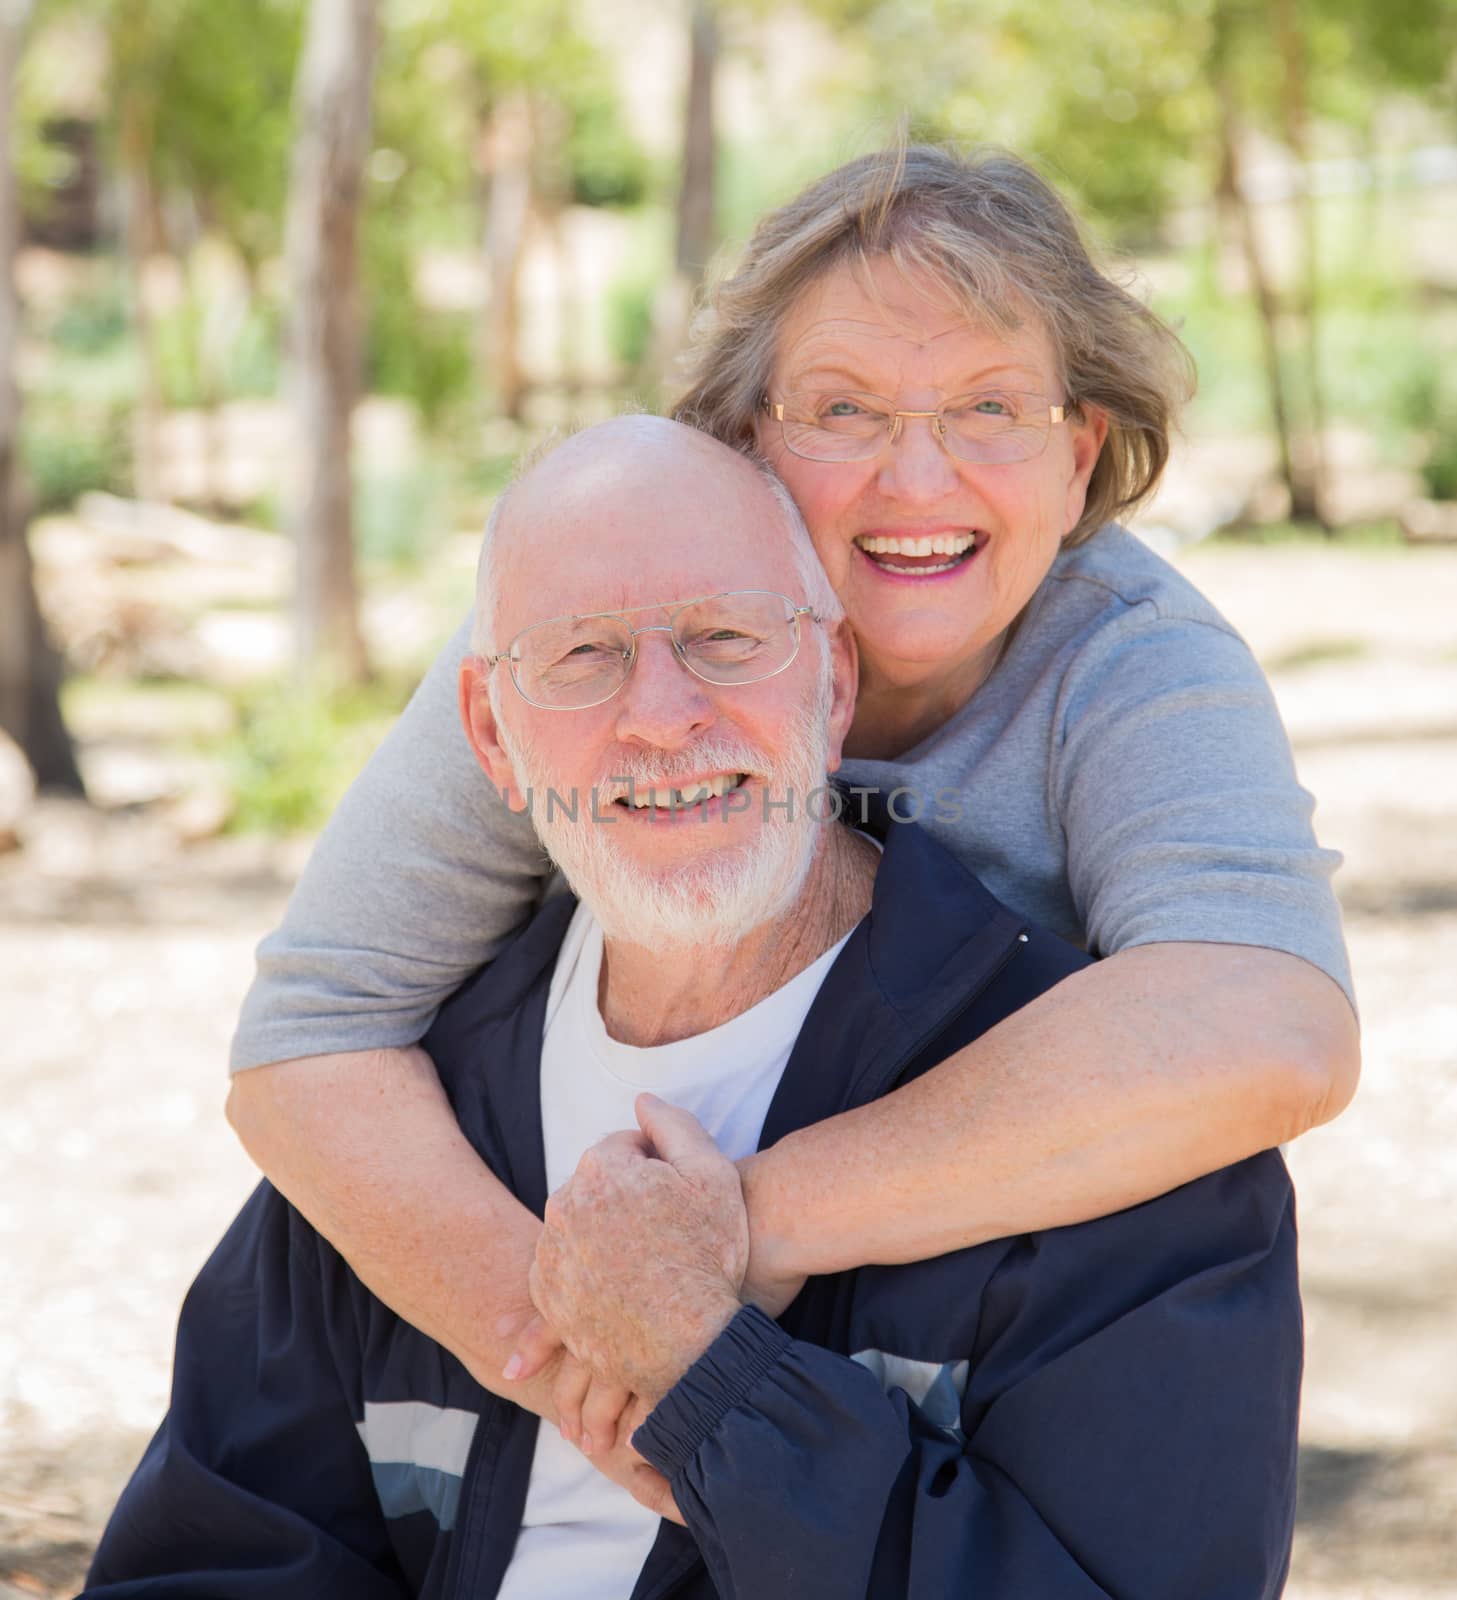 Happy Senior Couple Portrait Outdoors At Park.